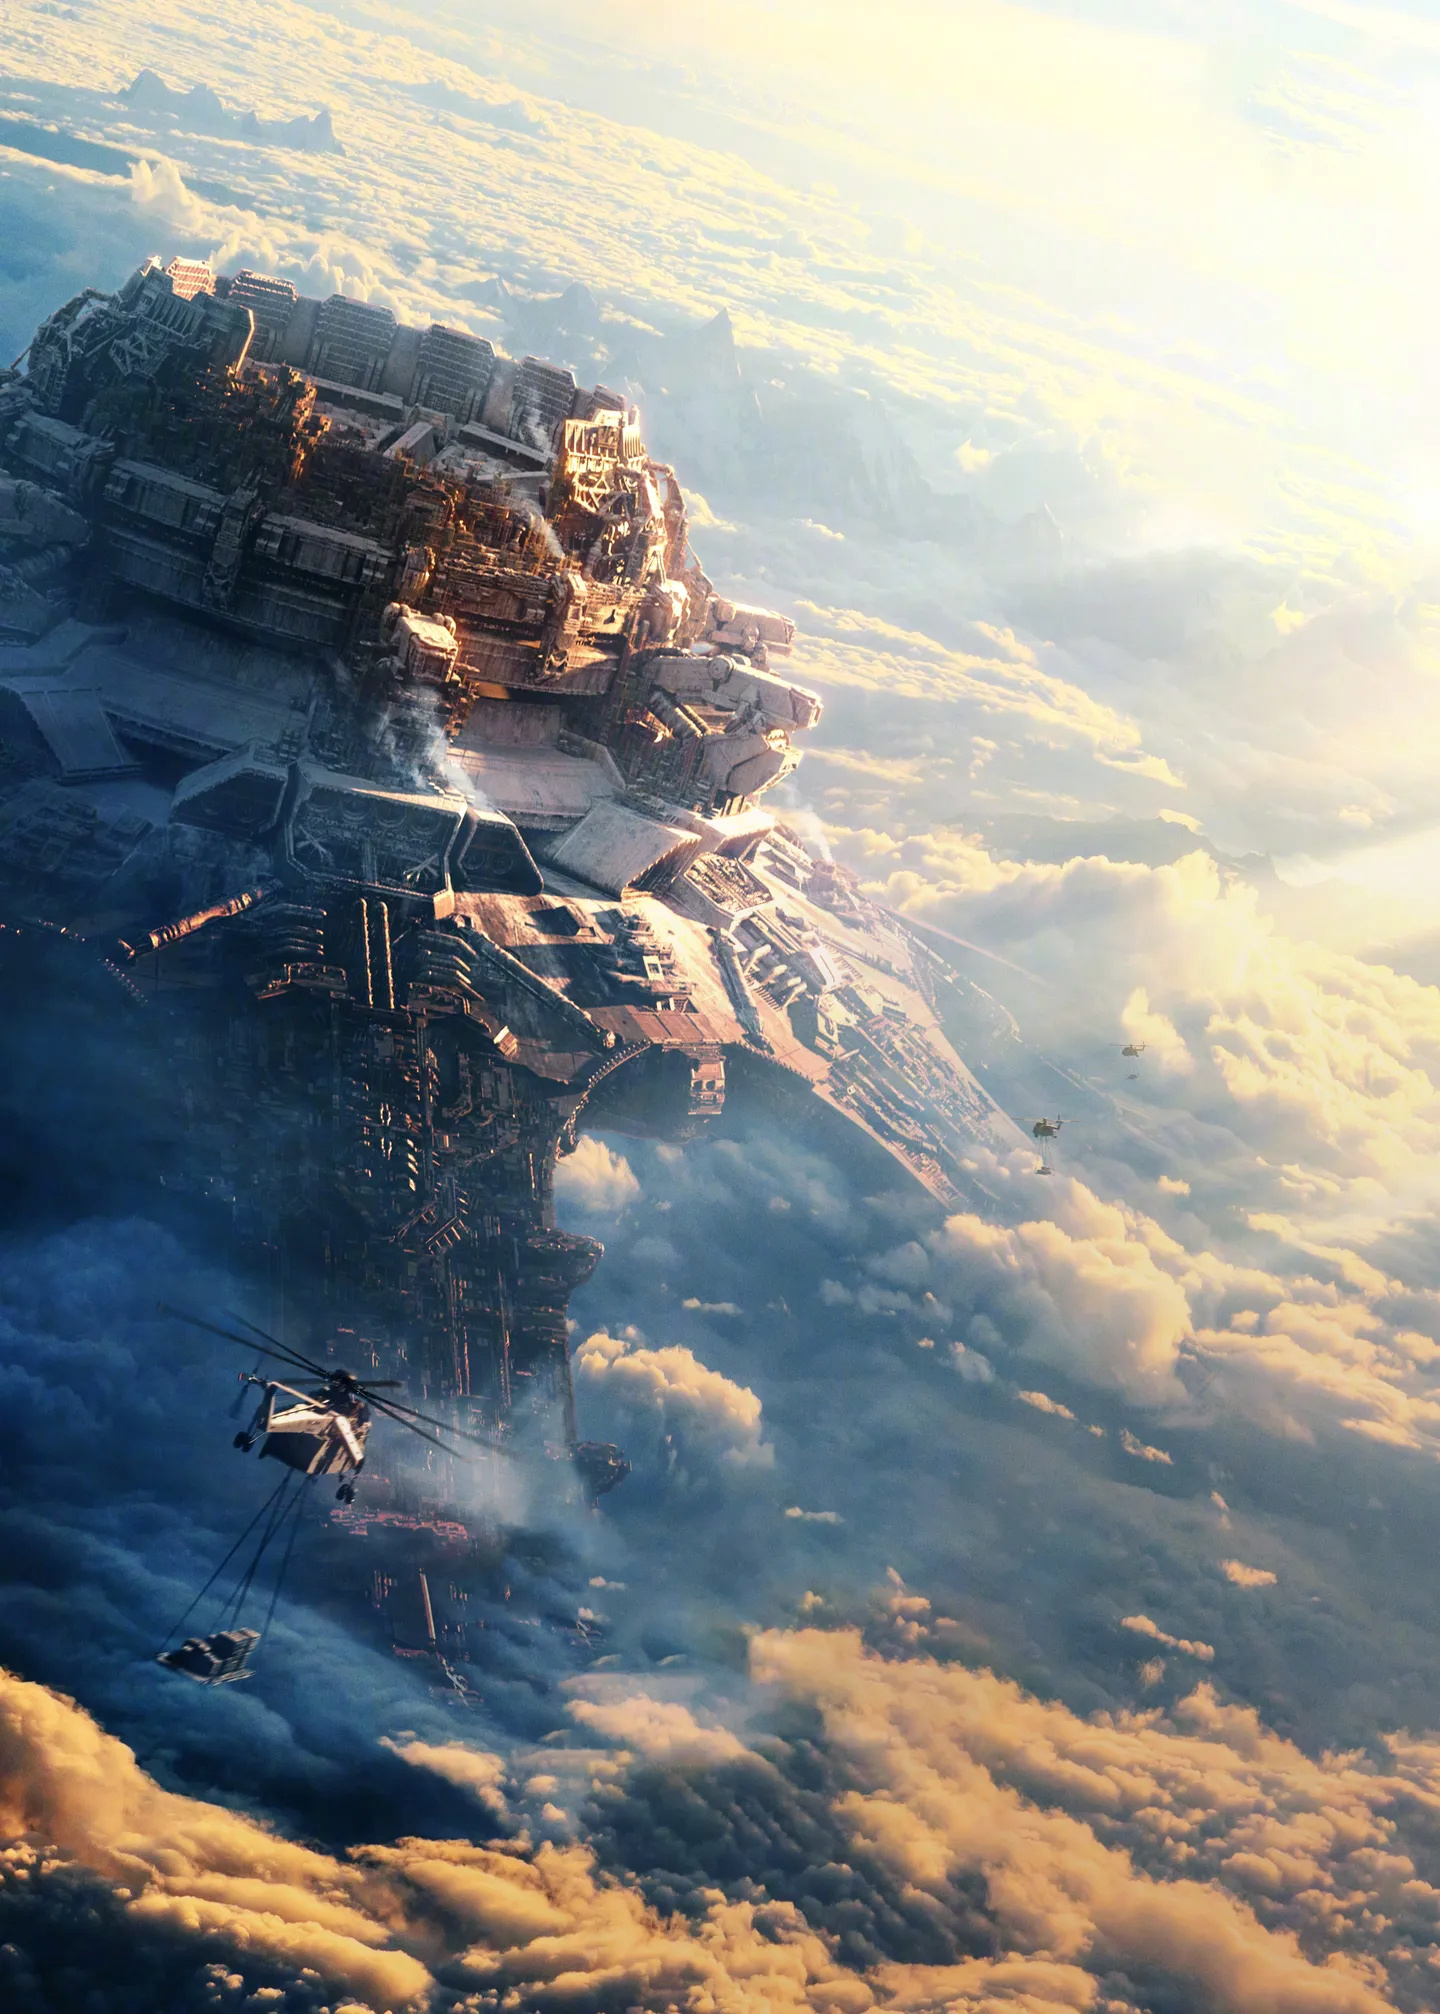 《流浪地球2》纪录片立项 畅谈科幻记录影片幕后